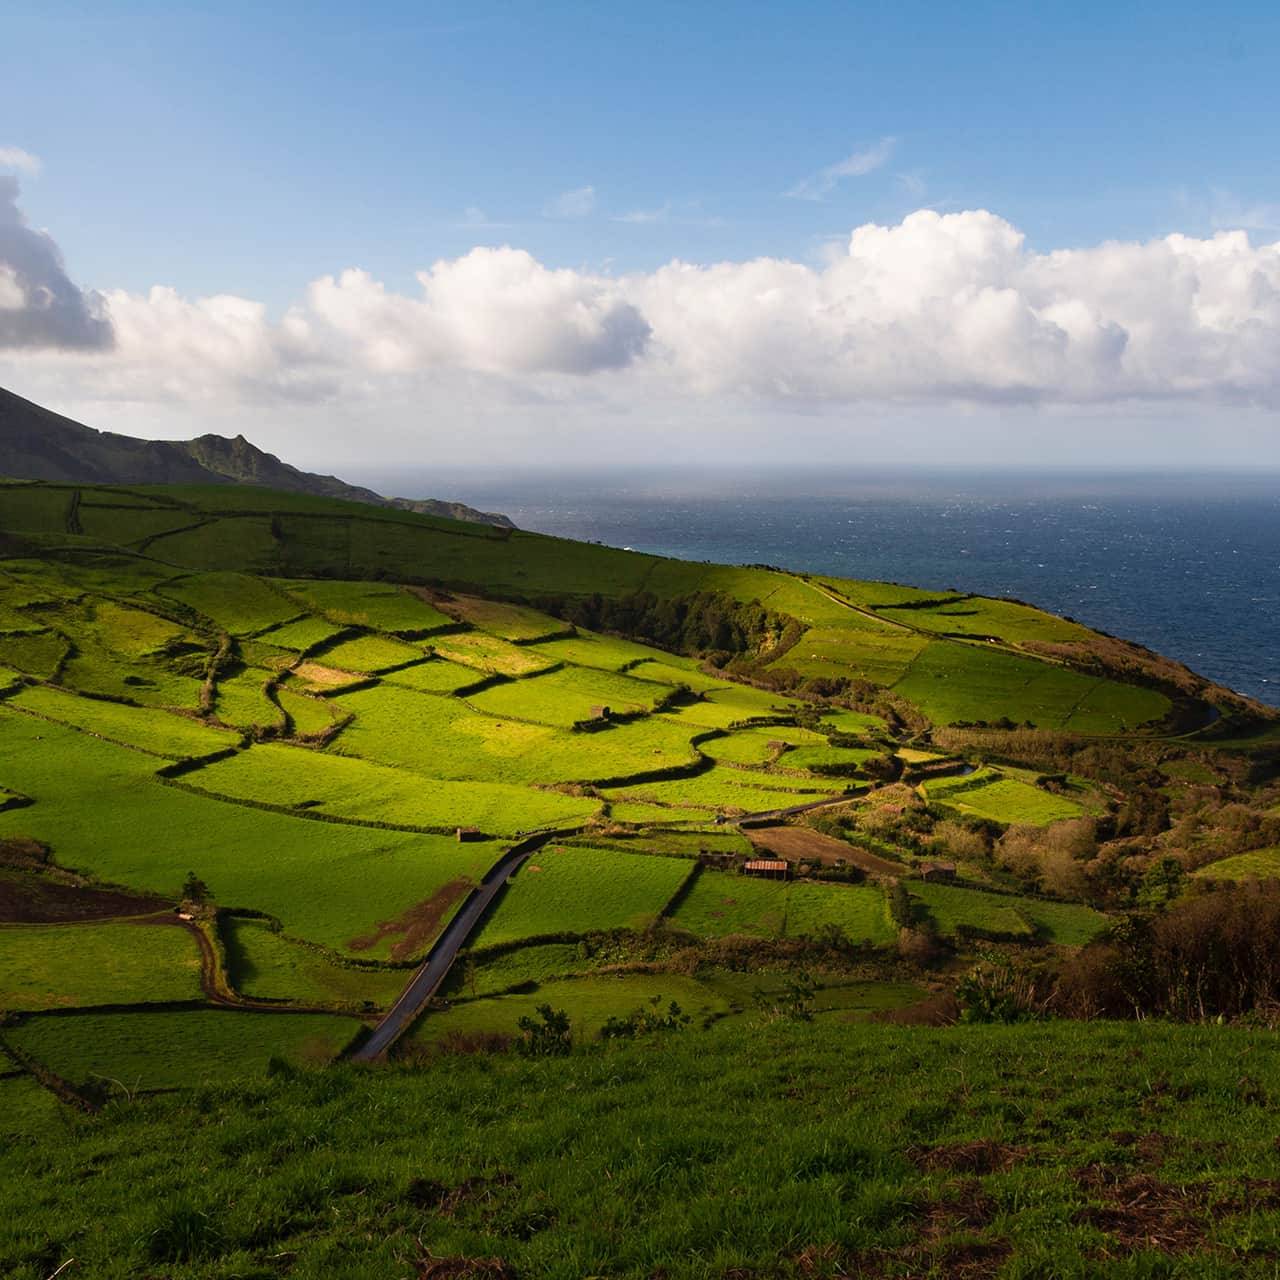 PRR Solenerge Transição Energética nos Açores - NML Turismo - Consultoria e Marketing